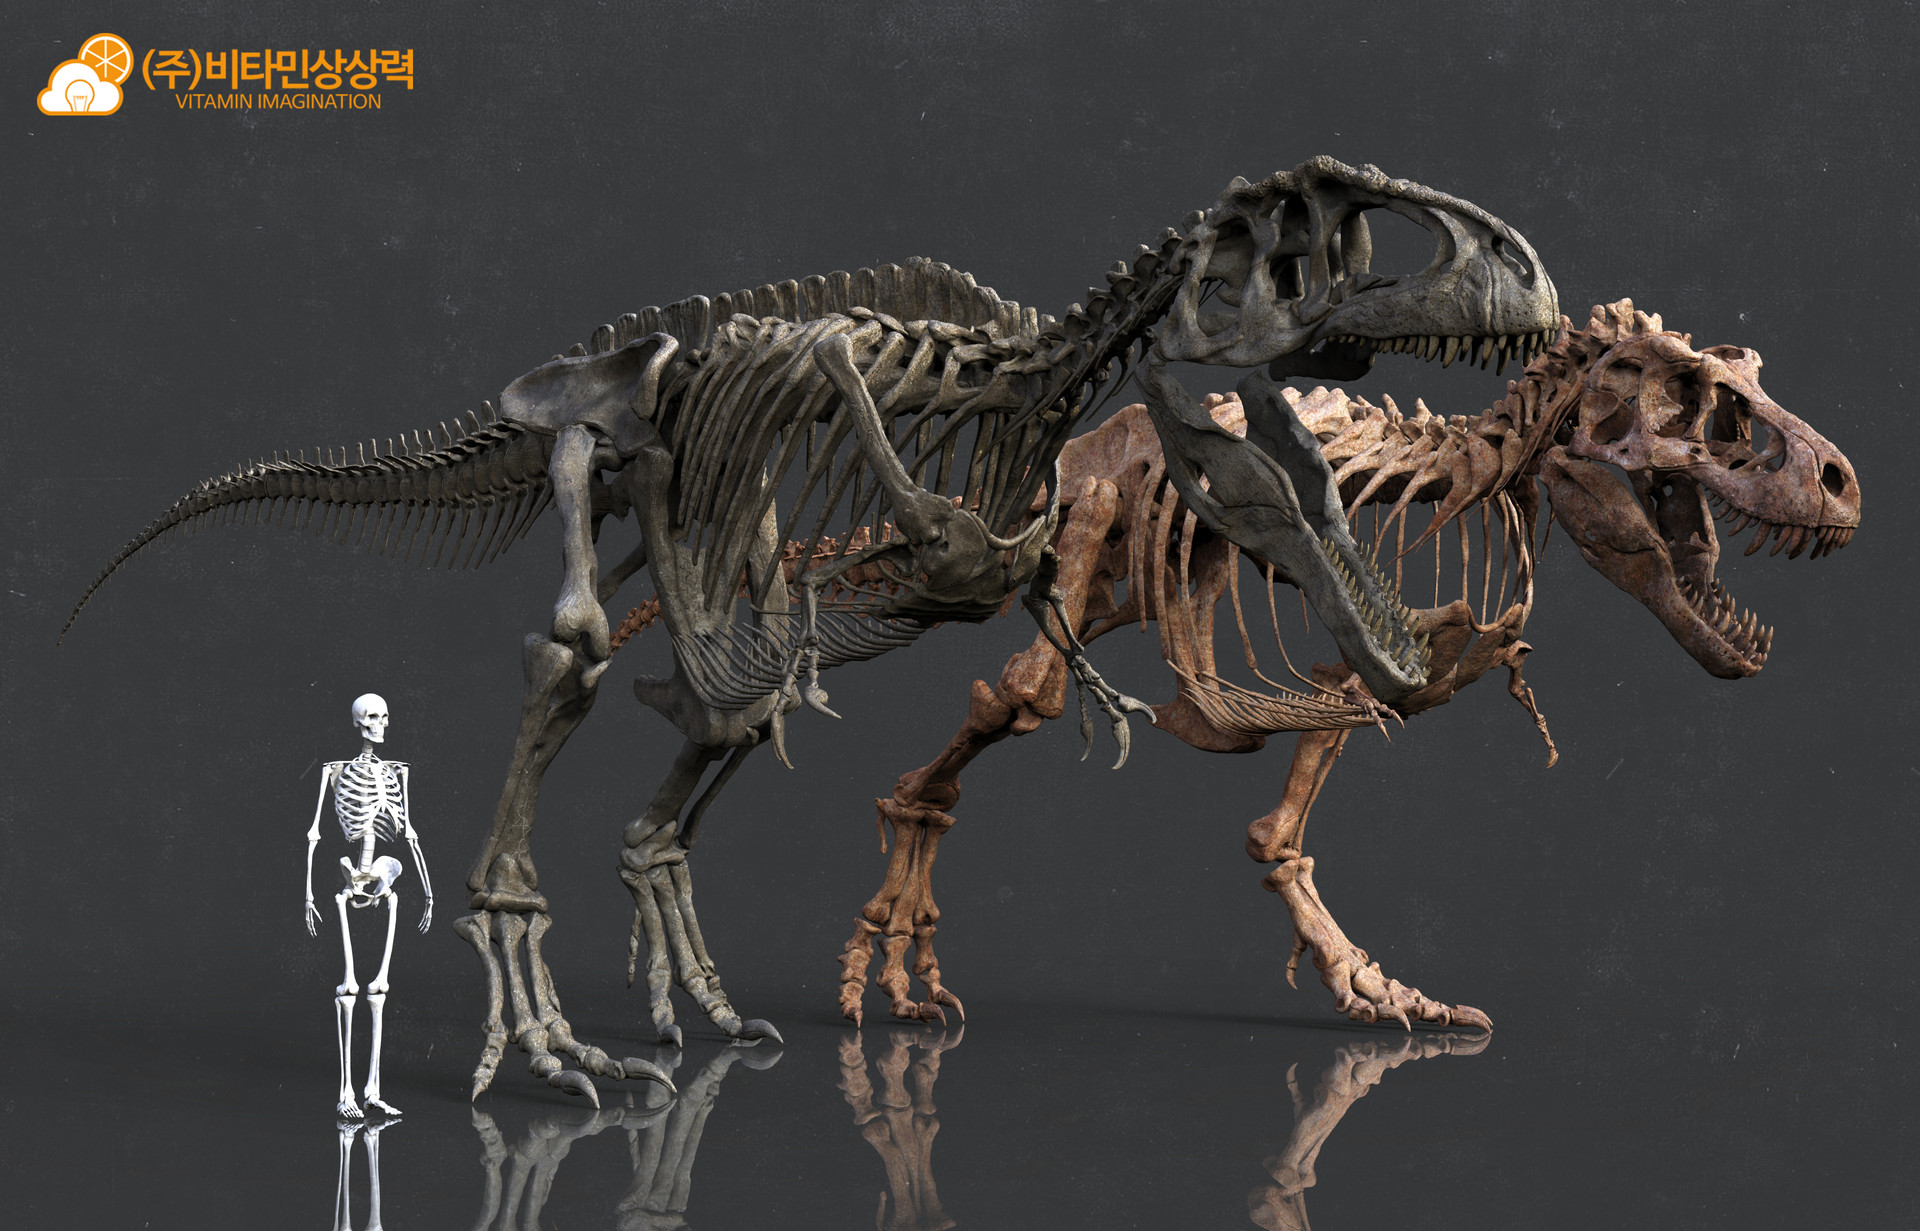 Tyrannosaurus Rex vs Giganotosaurus carolinii Vitamin-imagination-vs-1